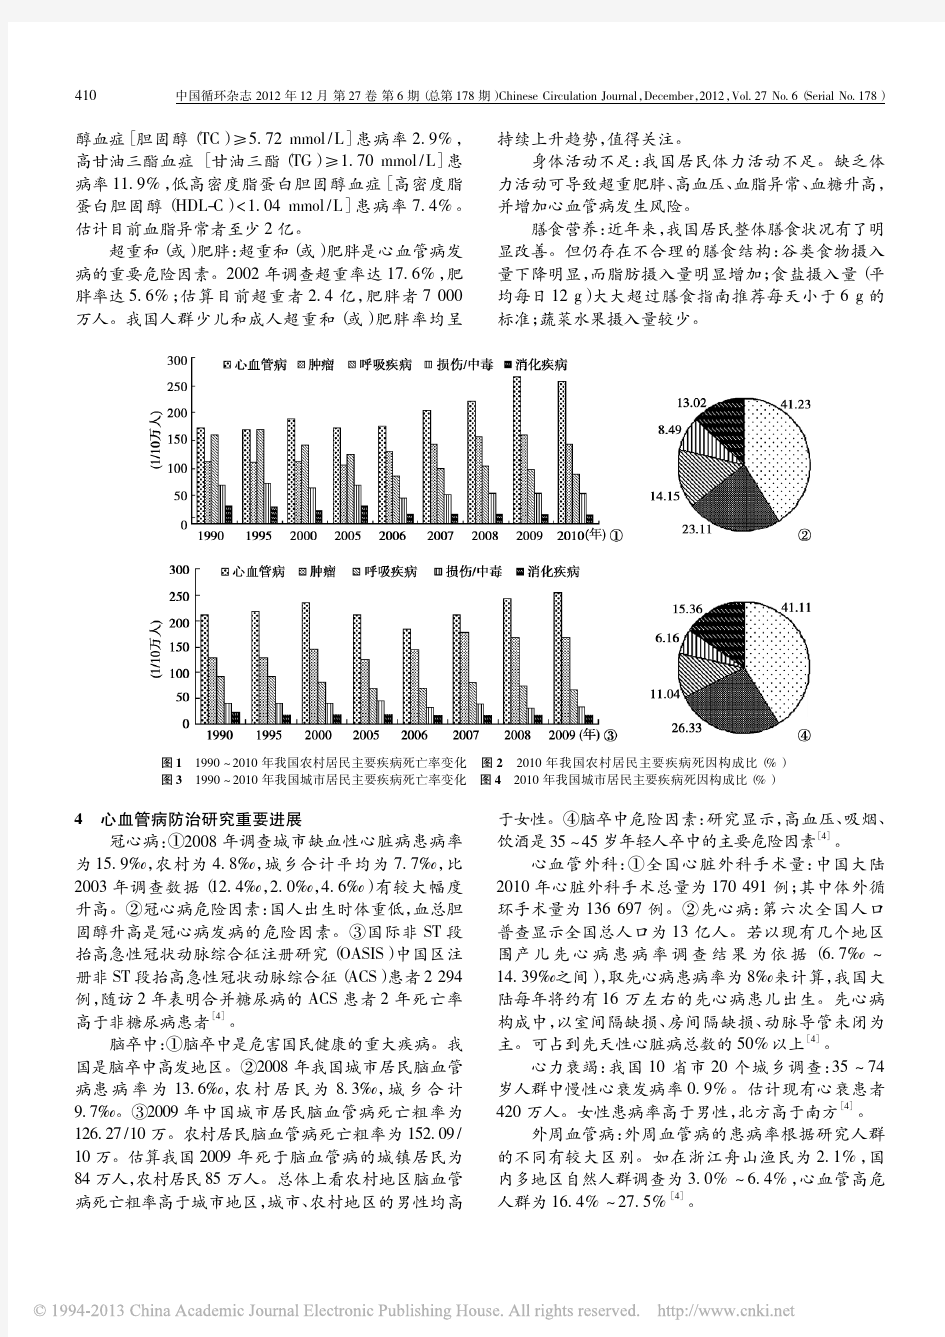 心血管病已成为我国重要的公共卫生问题_中国心血管病报告2011_概要